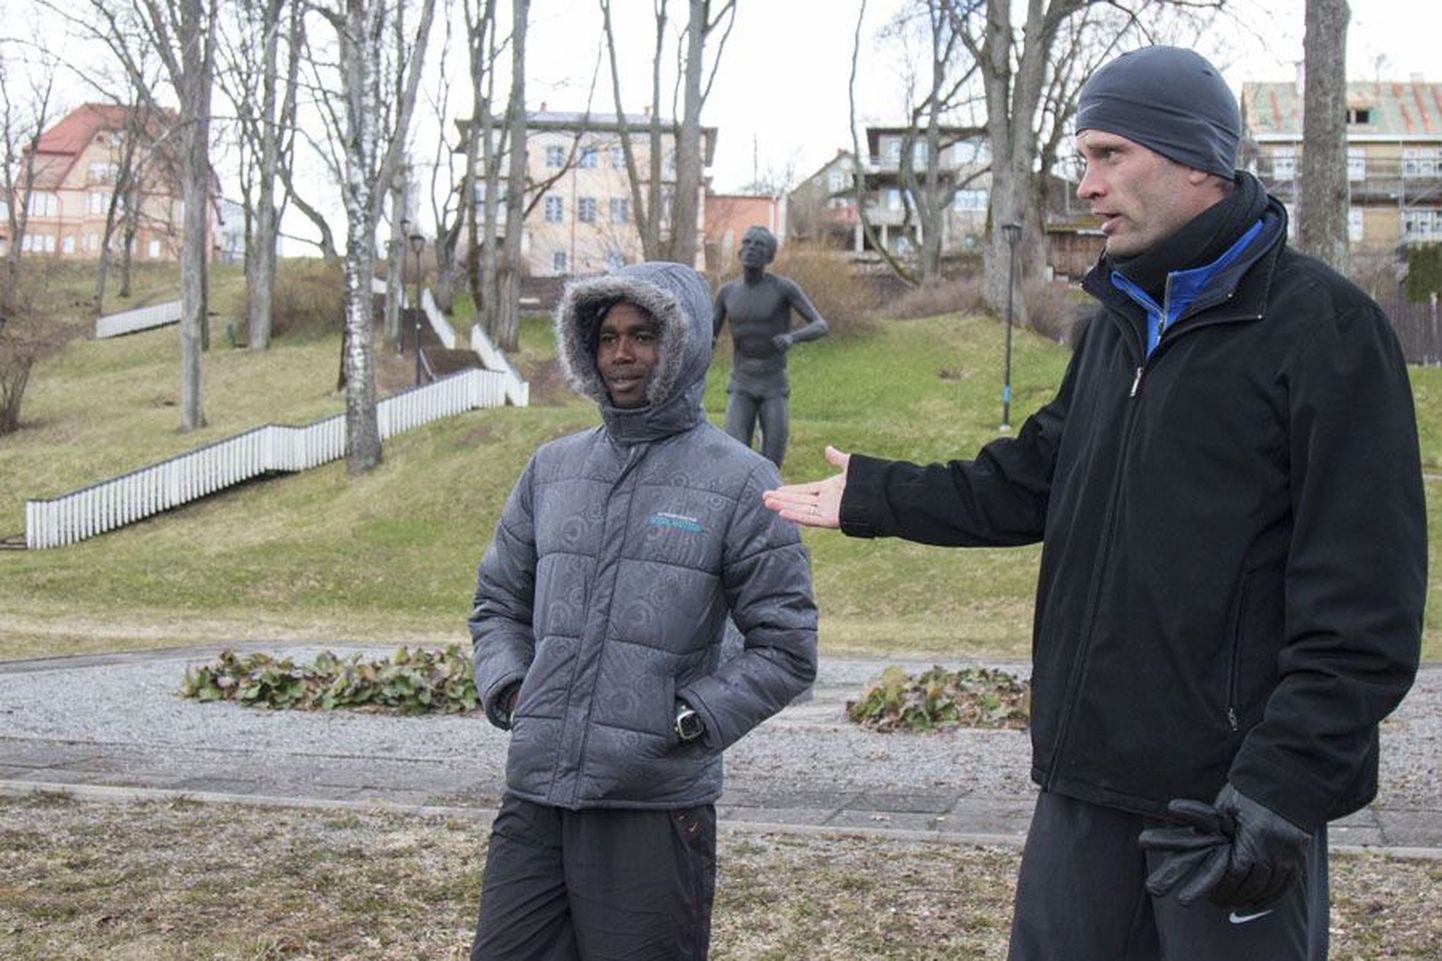 Treeningupartnerid ja sõbrad Ibrahim Mukunga Wachira ja Tiidrek Nurme käisid viis päeva enne ümber Viljandi järve jooksu rajaga tutvumas.